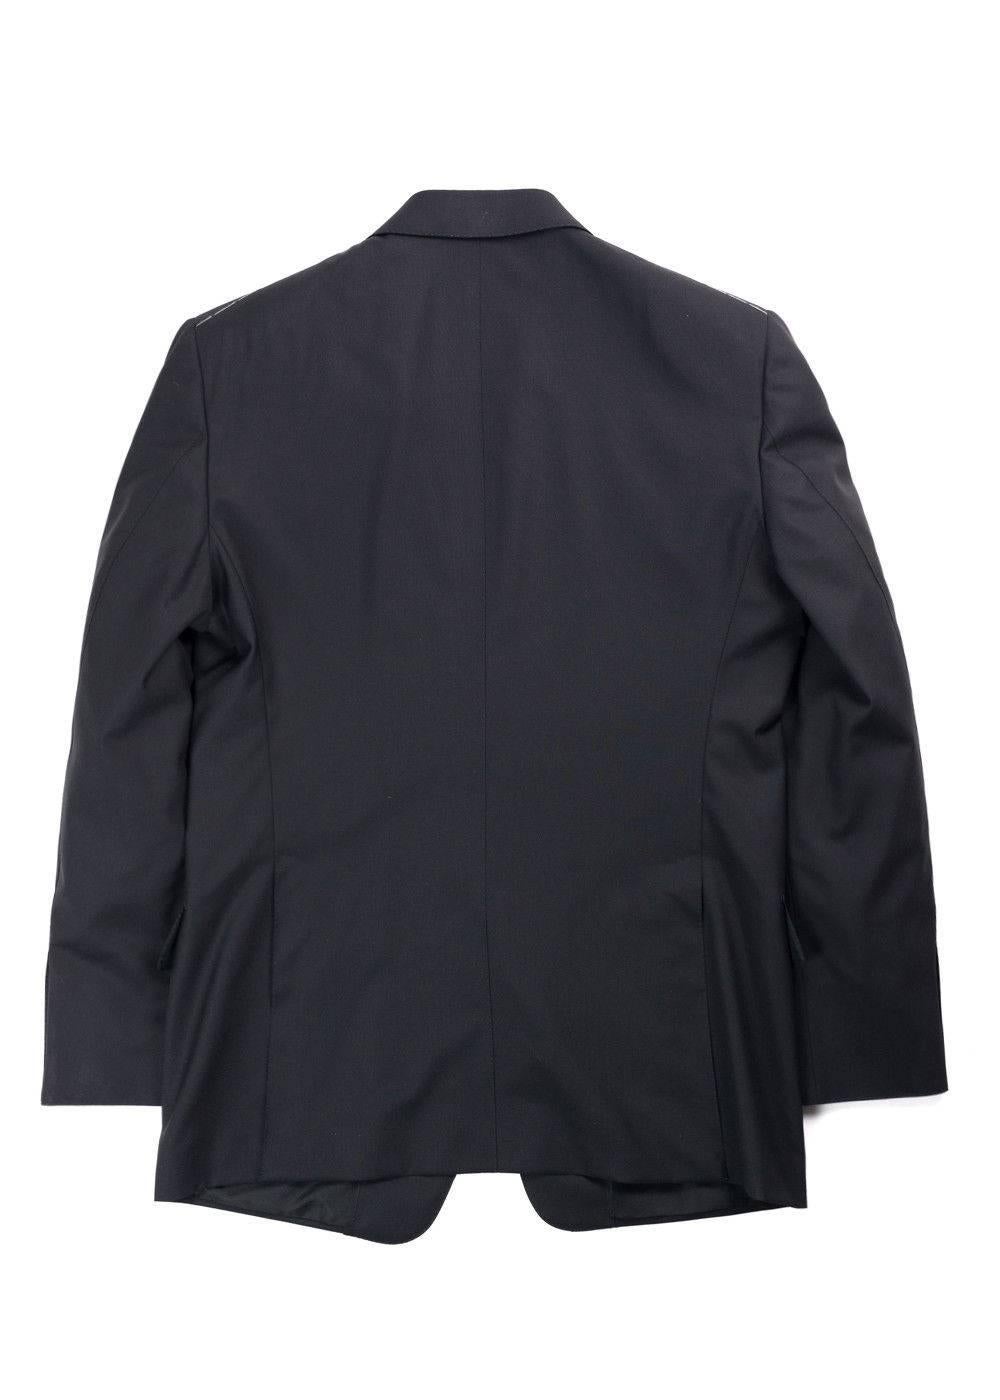 Tom Ford Black Windsor Base Wool Sharkskin 3Pc Suit For Sale 1